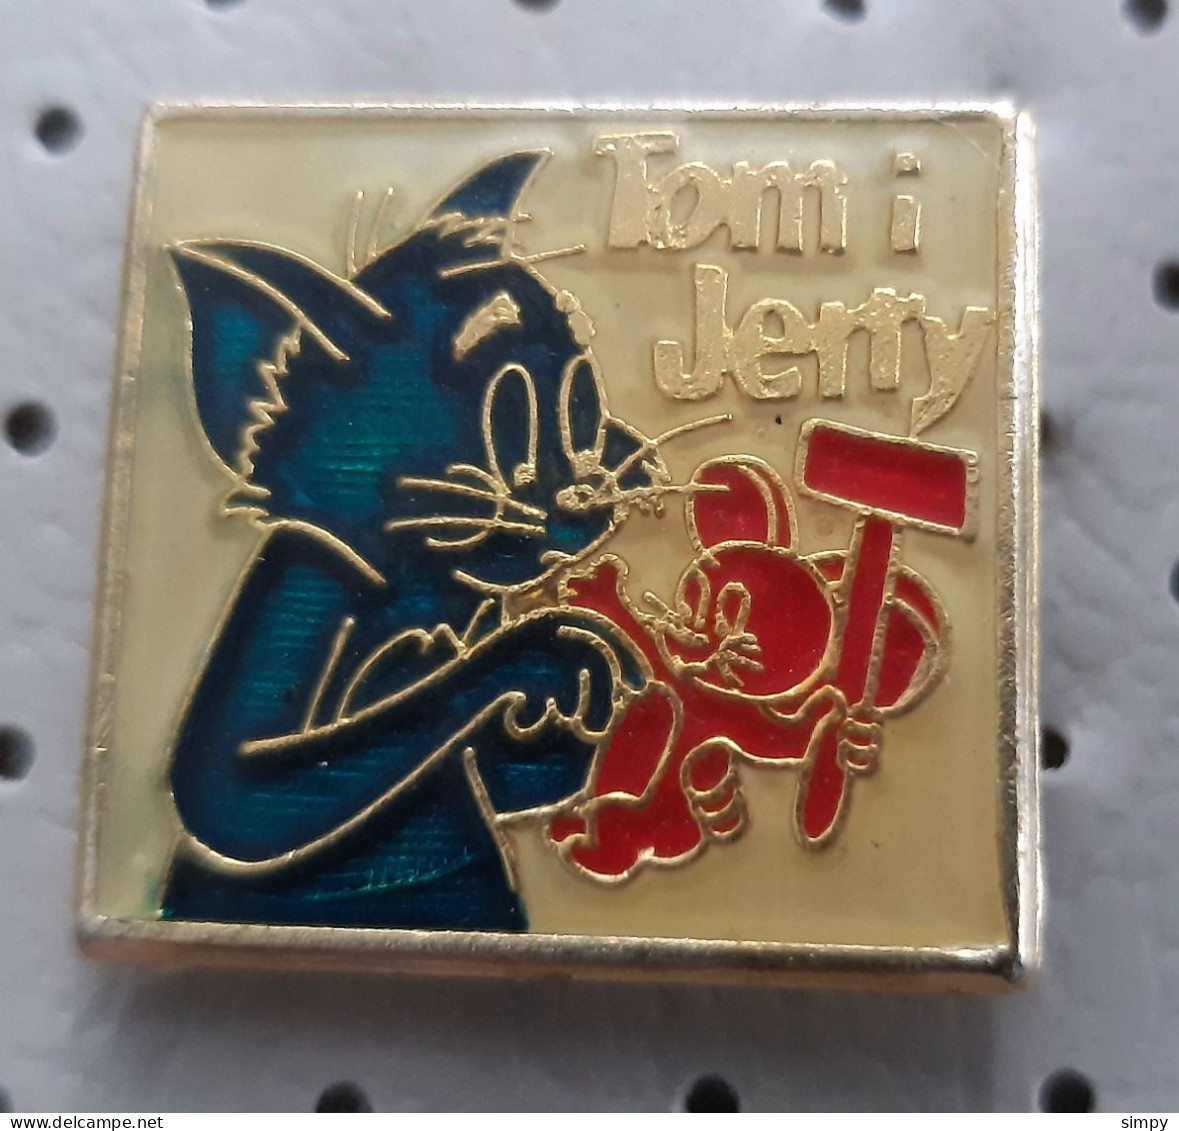 Tom And Jerry Cat Mouse Classic Cartoon Yugoslavia Pin - Comics